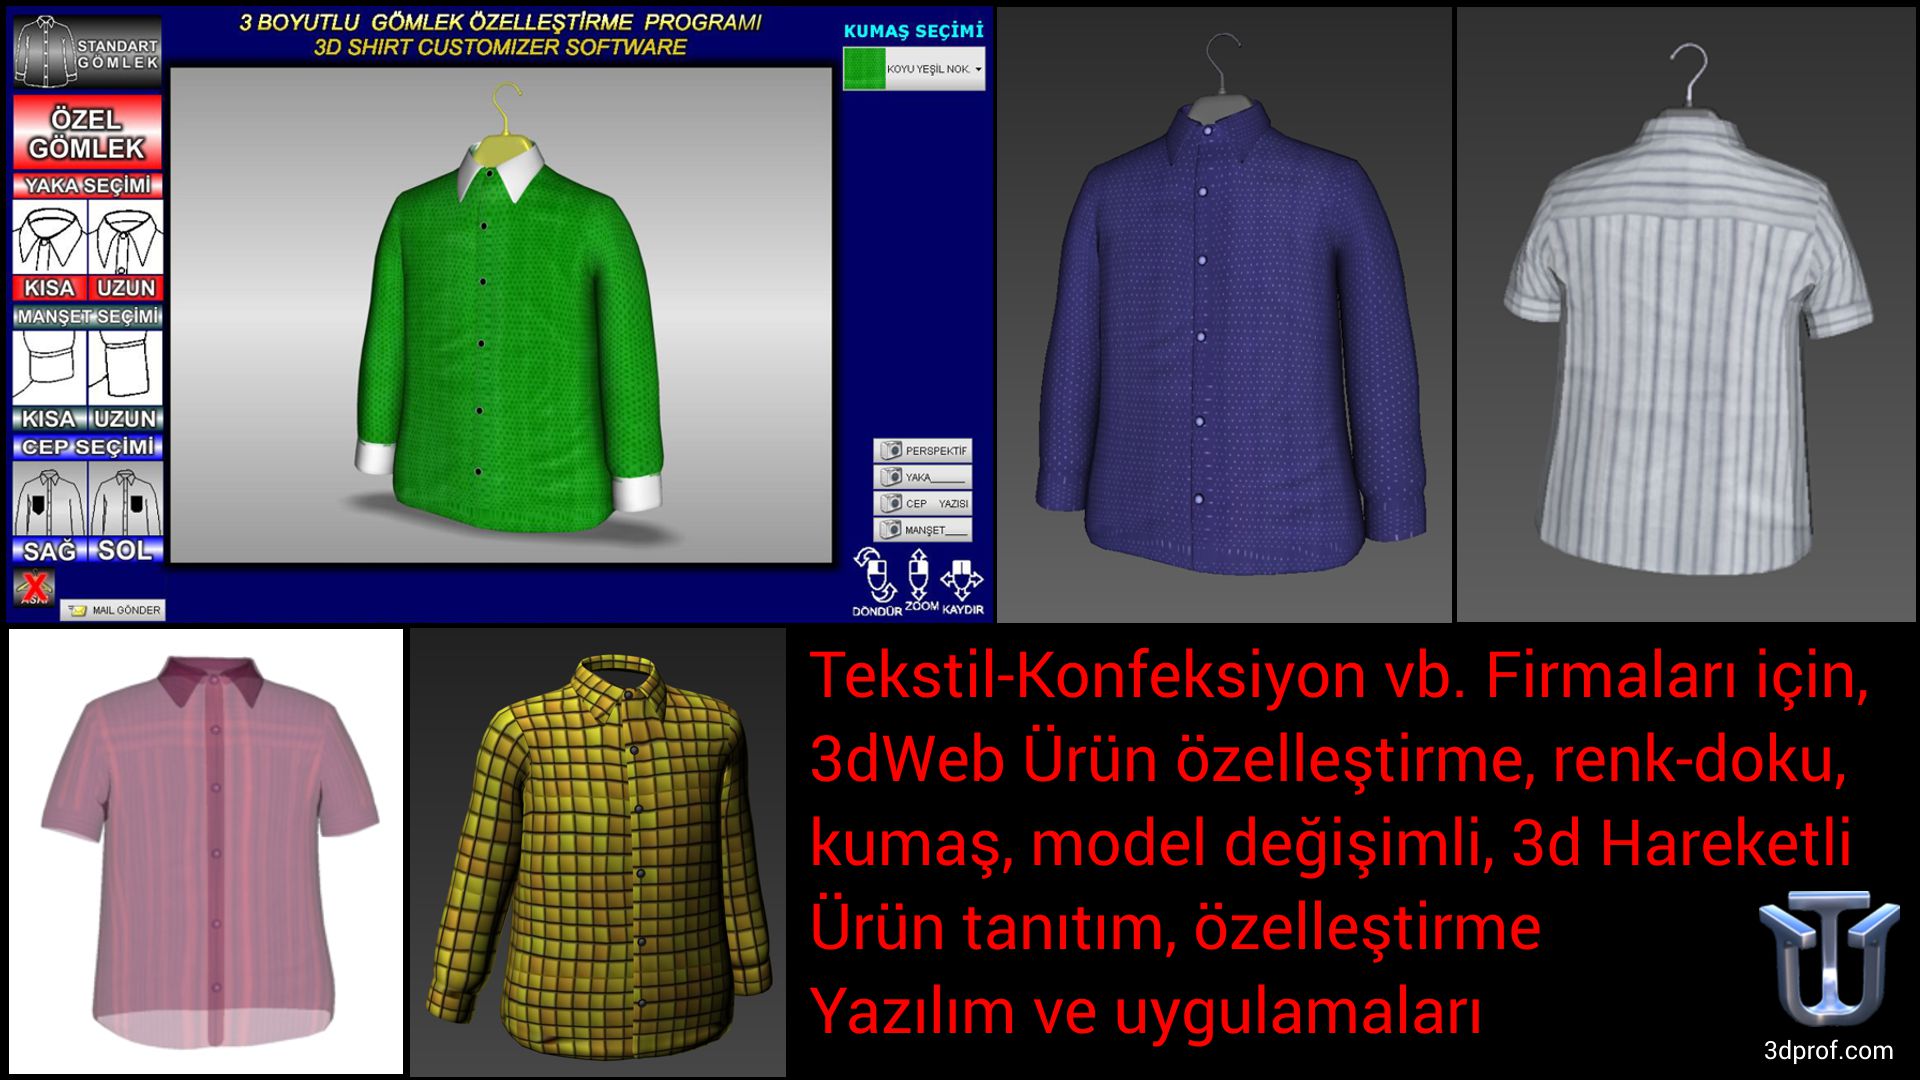 Tekstil-Konfeksiyon vb. Firmaları için, 3dWeb Ürün özelleştirme, renk-doku, kumaş, model değişimli, 3d Hareketli Ürün tanıtım, özelleştirme Yazılım ve uygulamaları